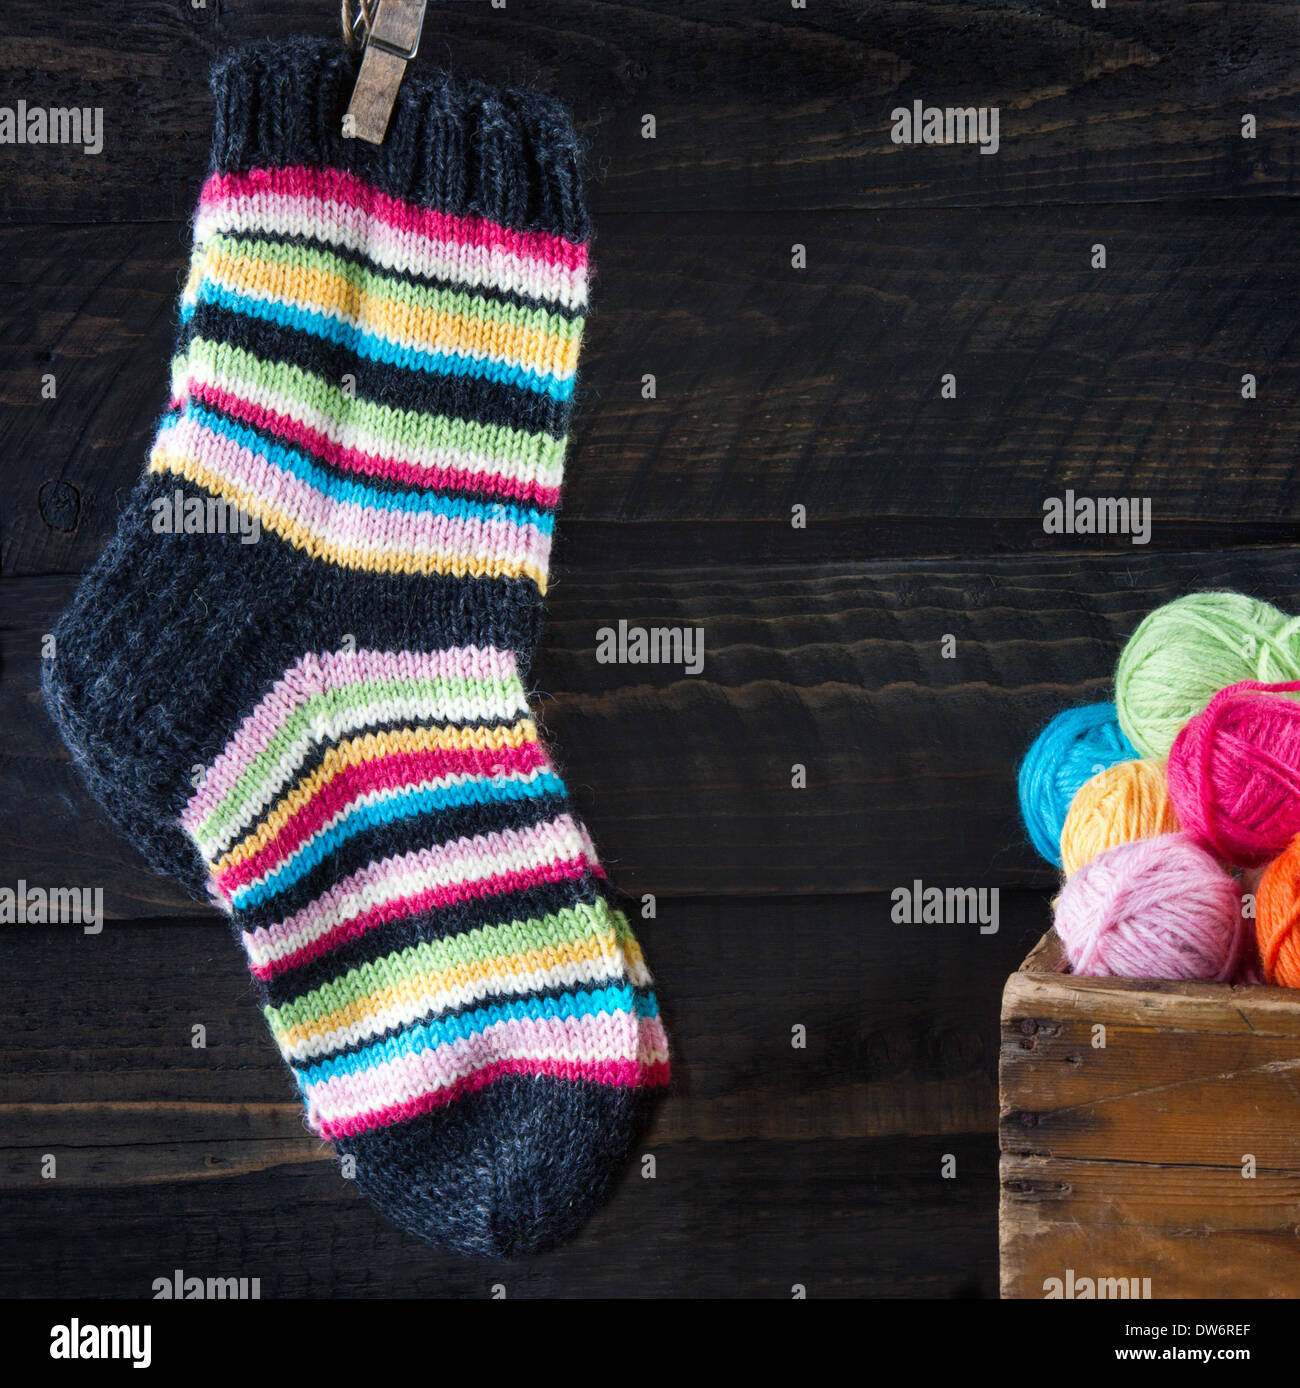 Des chaussettes en laine rayée hanging on clothesline Banque D'Images